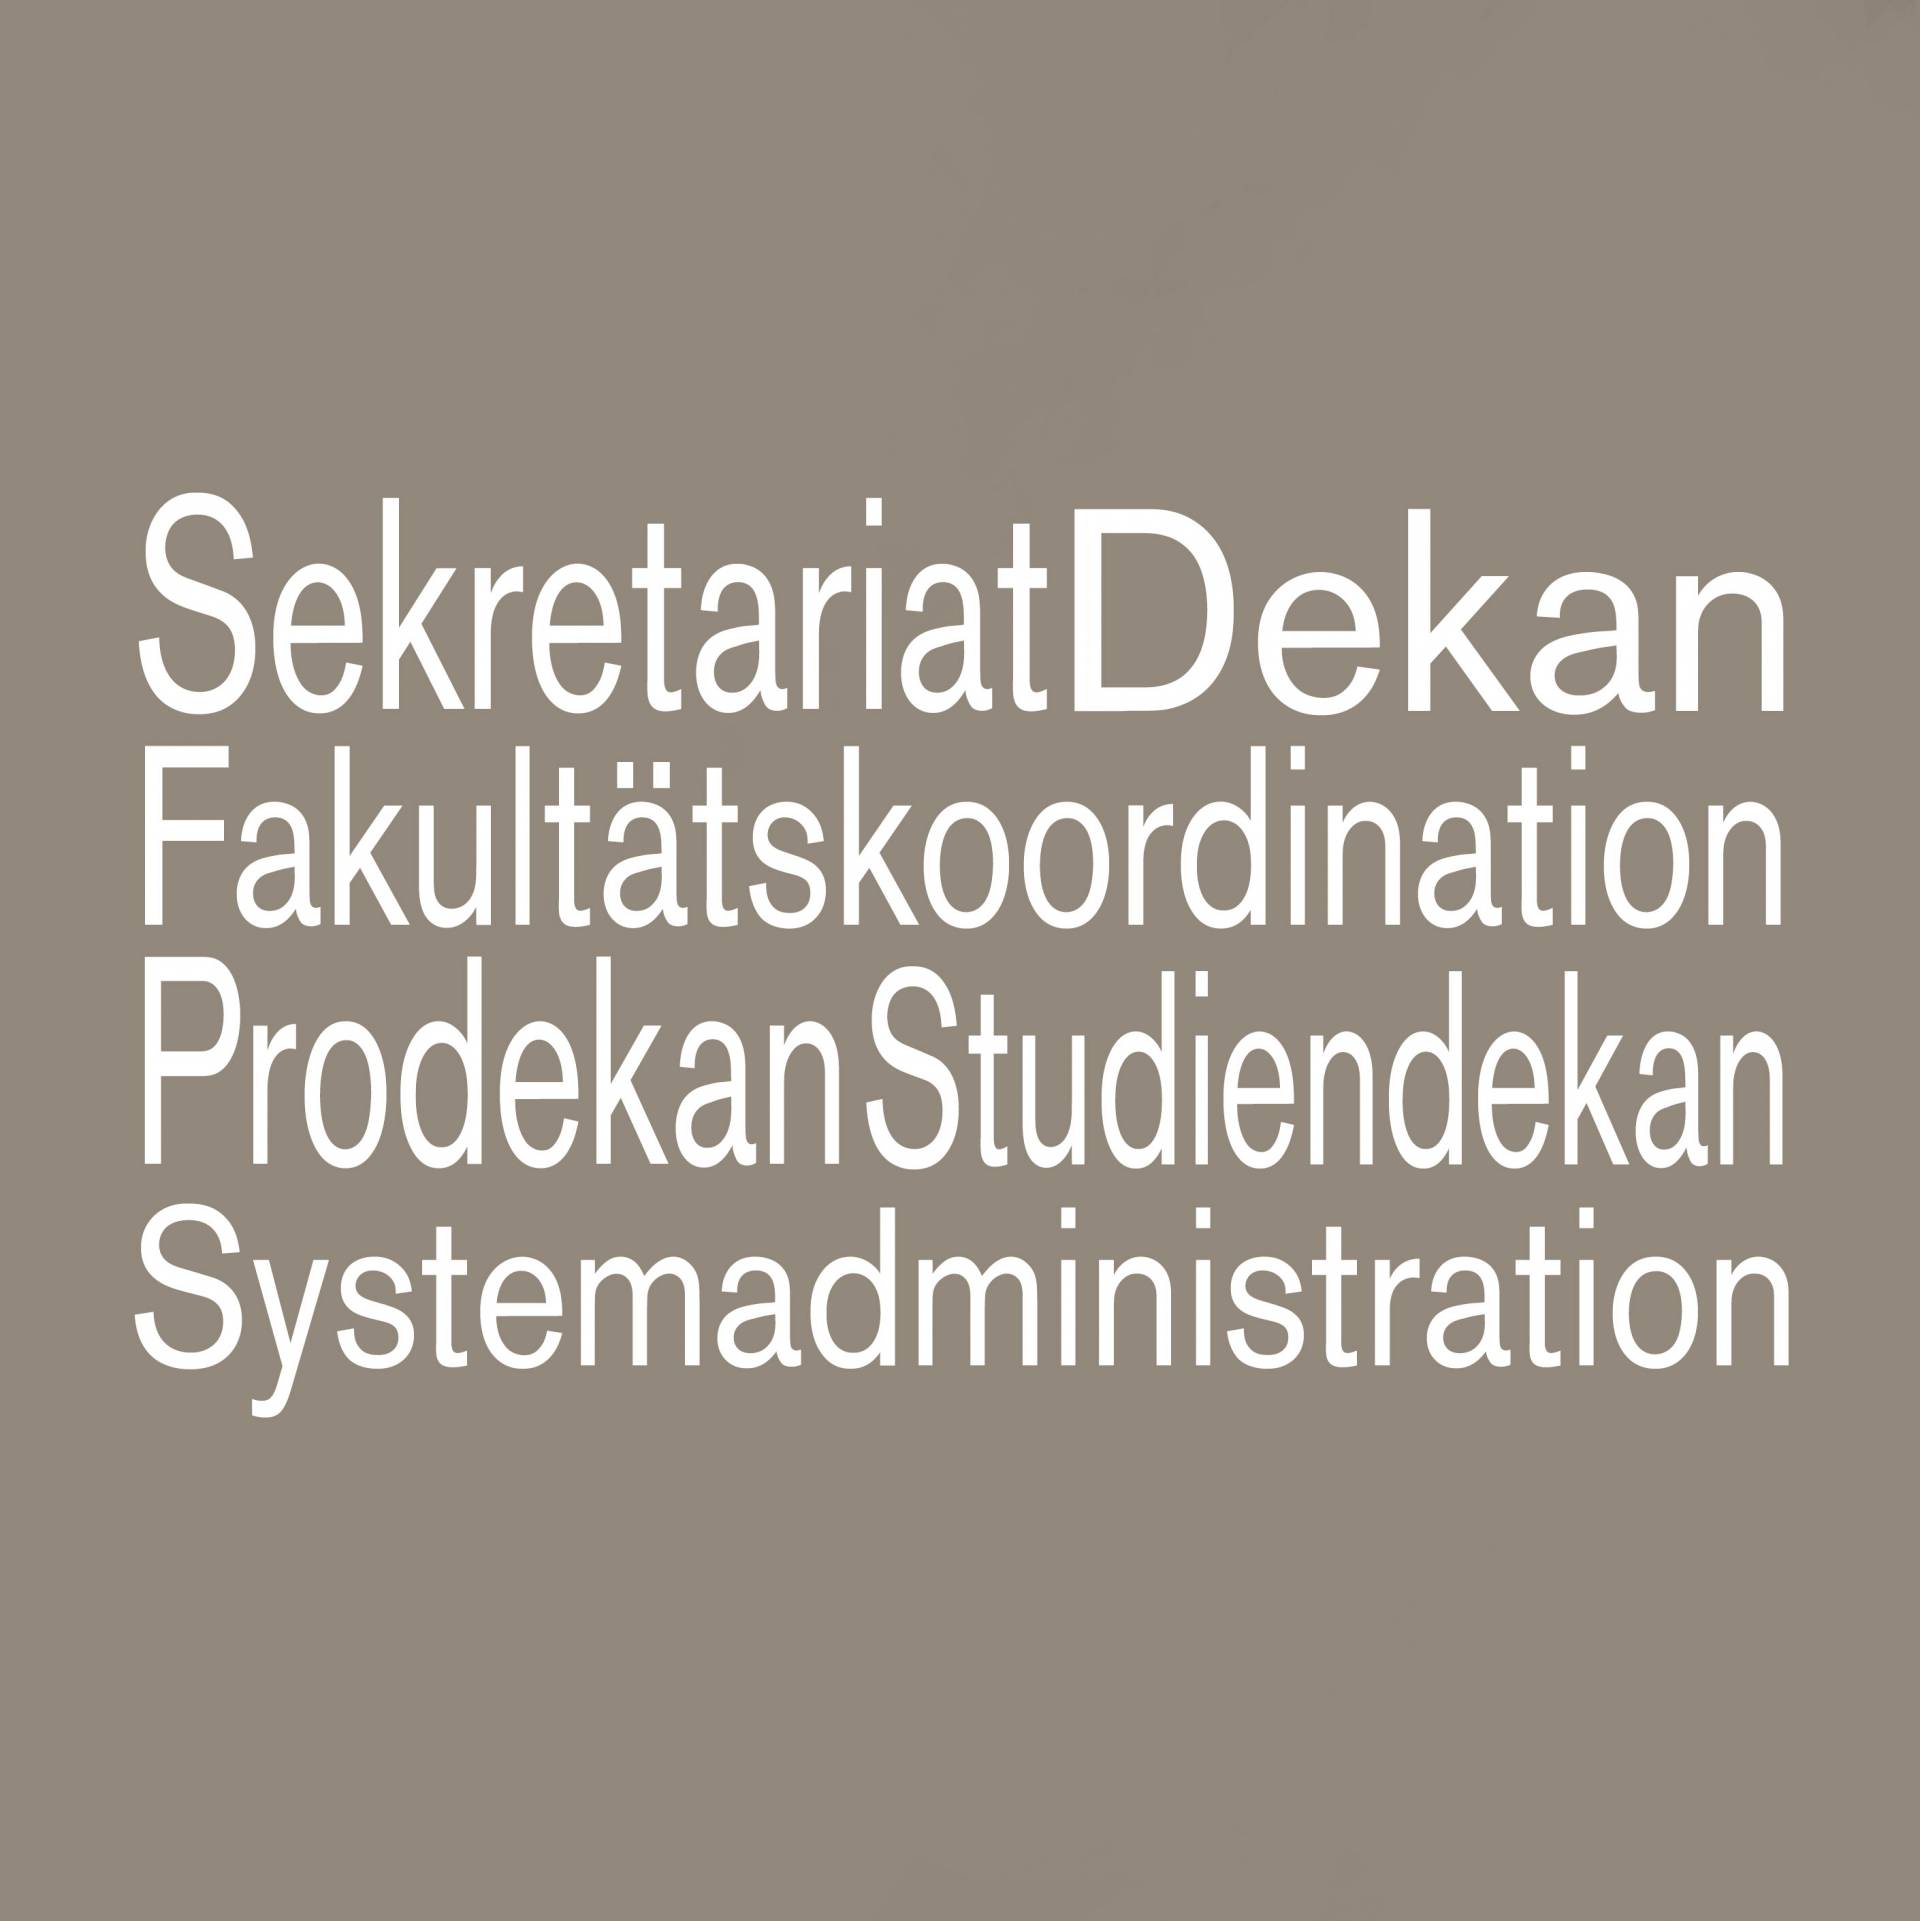 Grauer Untergrund mit weißer Schrift: Sekretariat Dekan Fakultätskoordination Prodekan Studiendekan Systemadministration